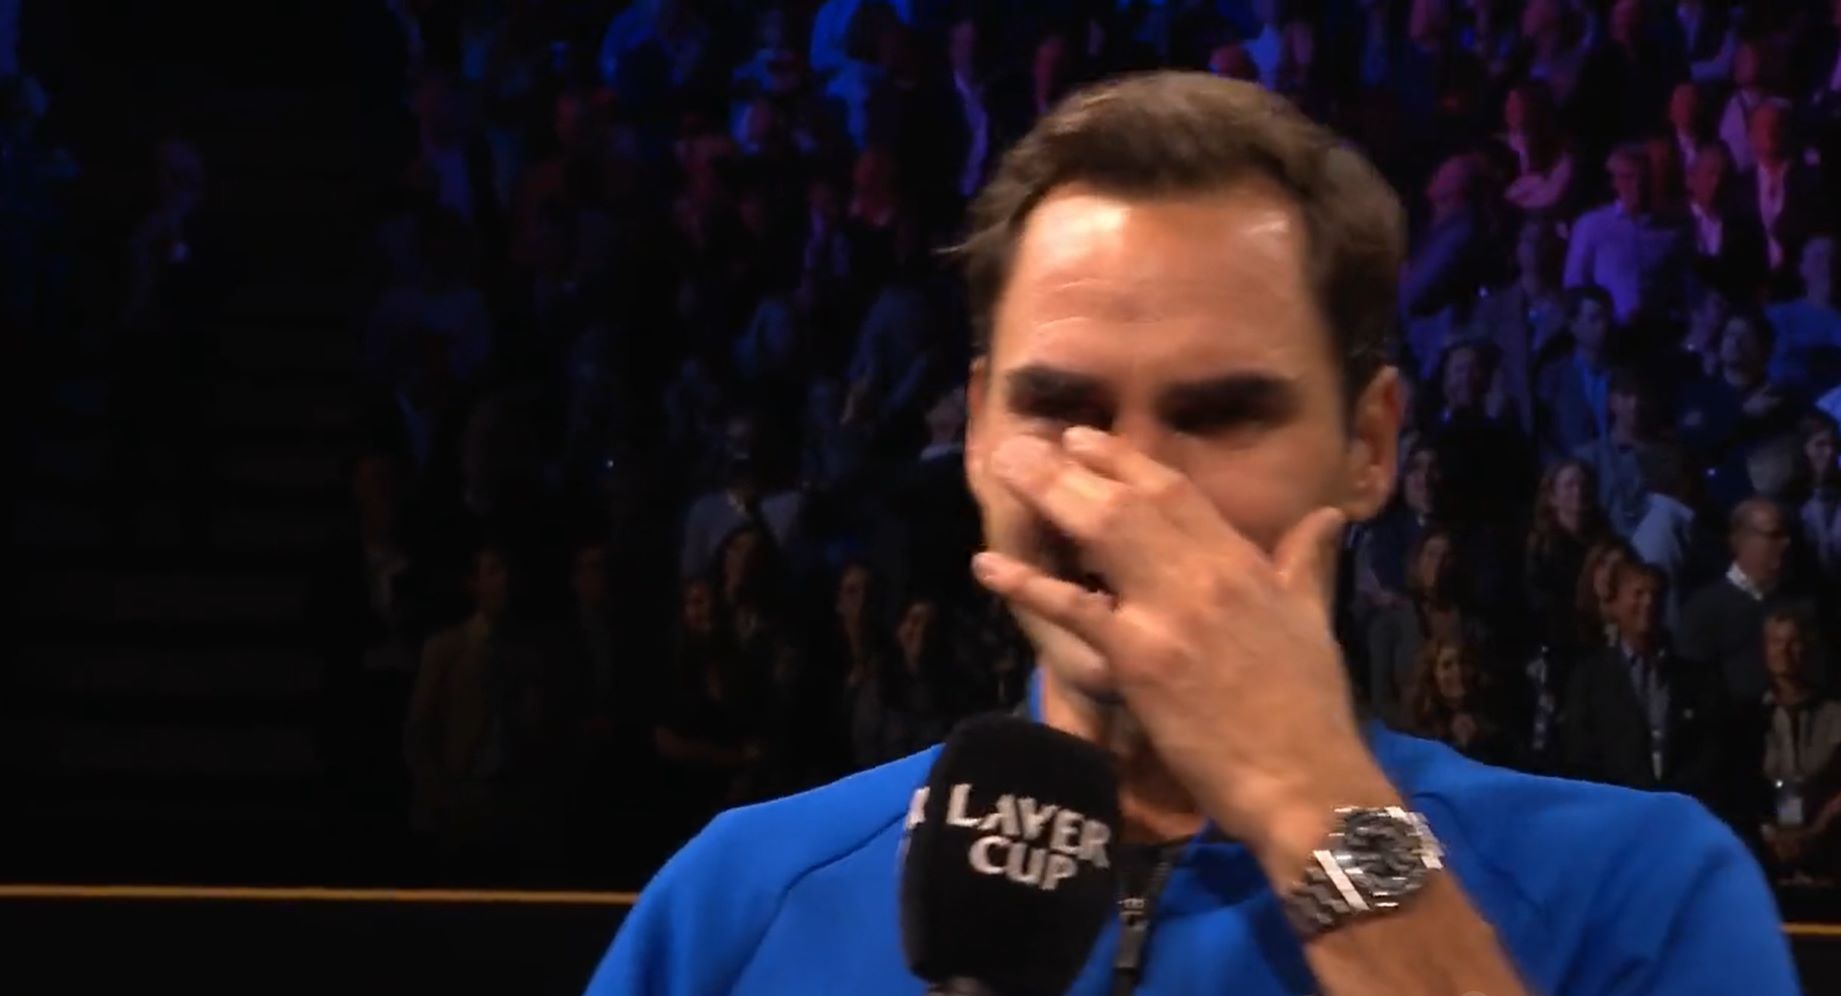 Petenis Roger Federer tak kuasa menahan tangis saat mengucapkan perpisahan usai kalah di pertandingan terakhirnya pada Laver Cup.